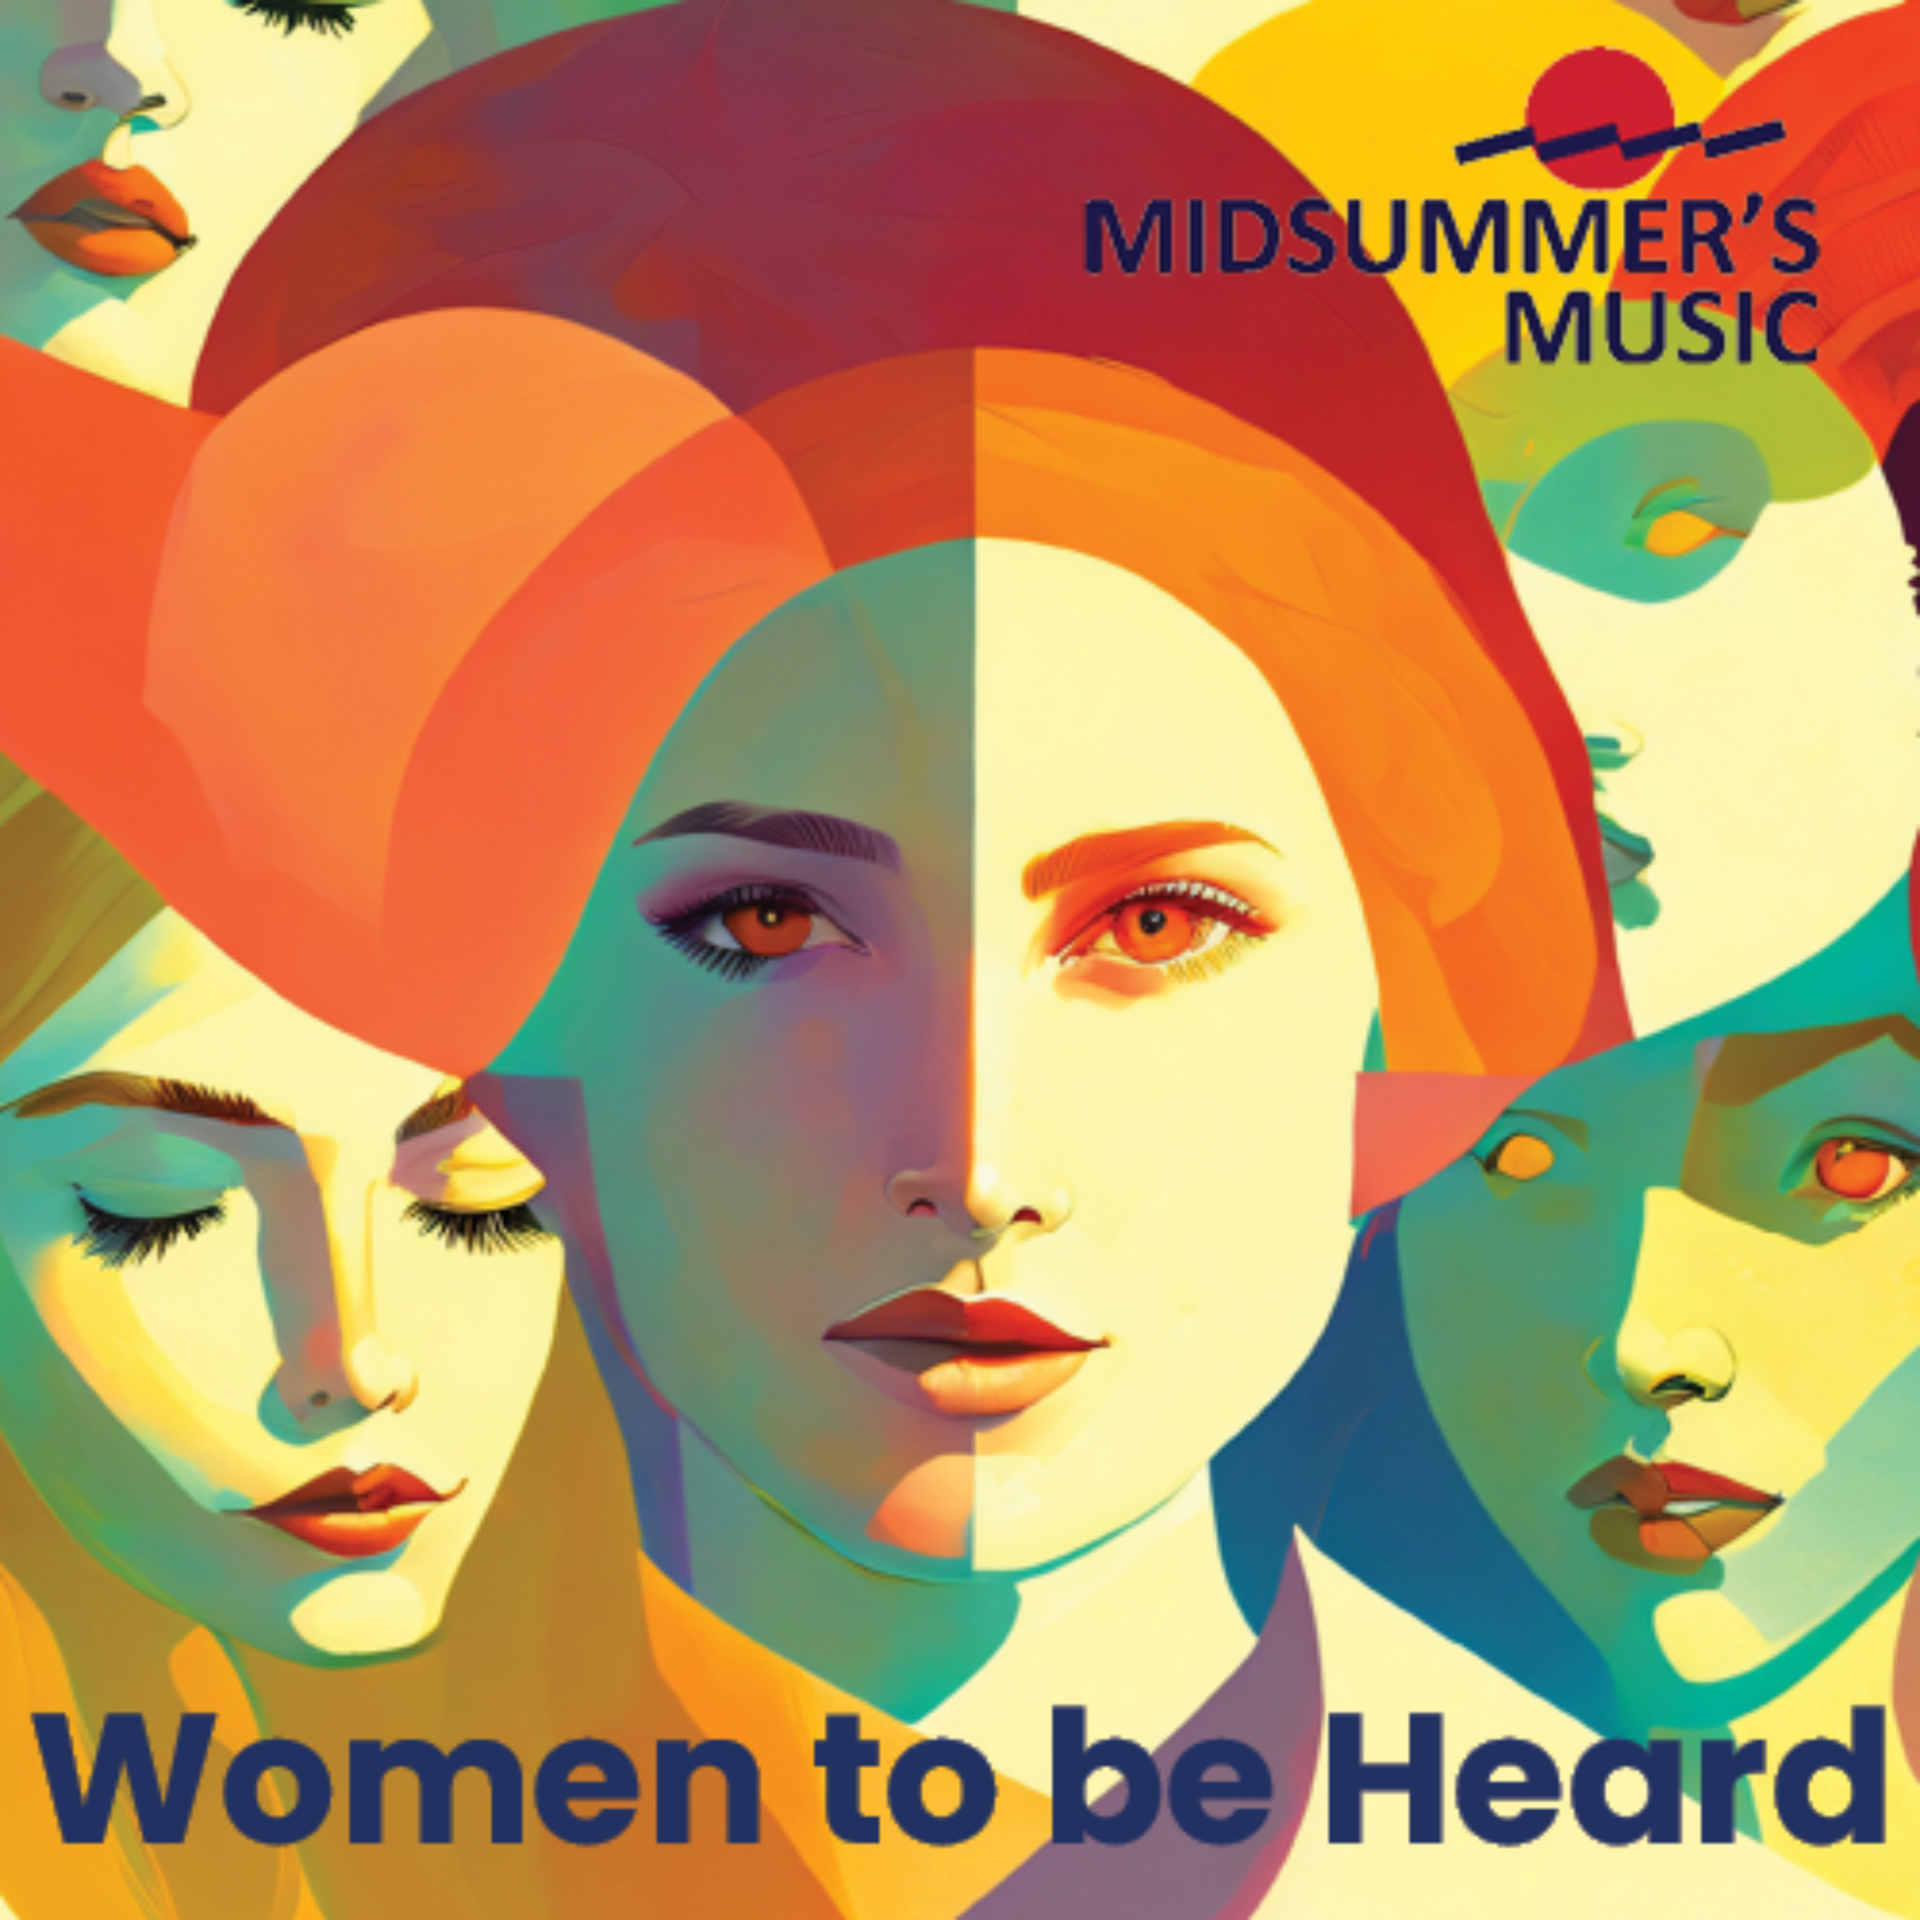 Women to be Heard: Midsummer's Music, June 25th